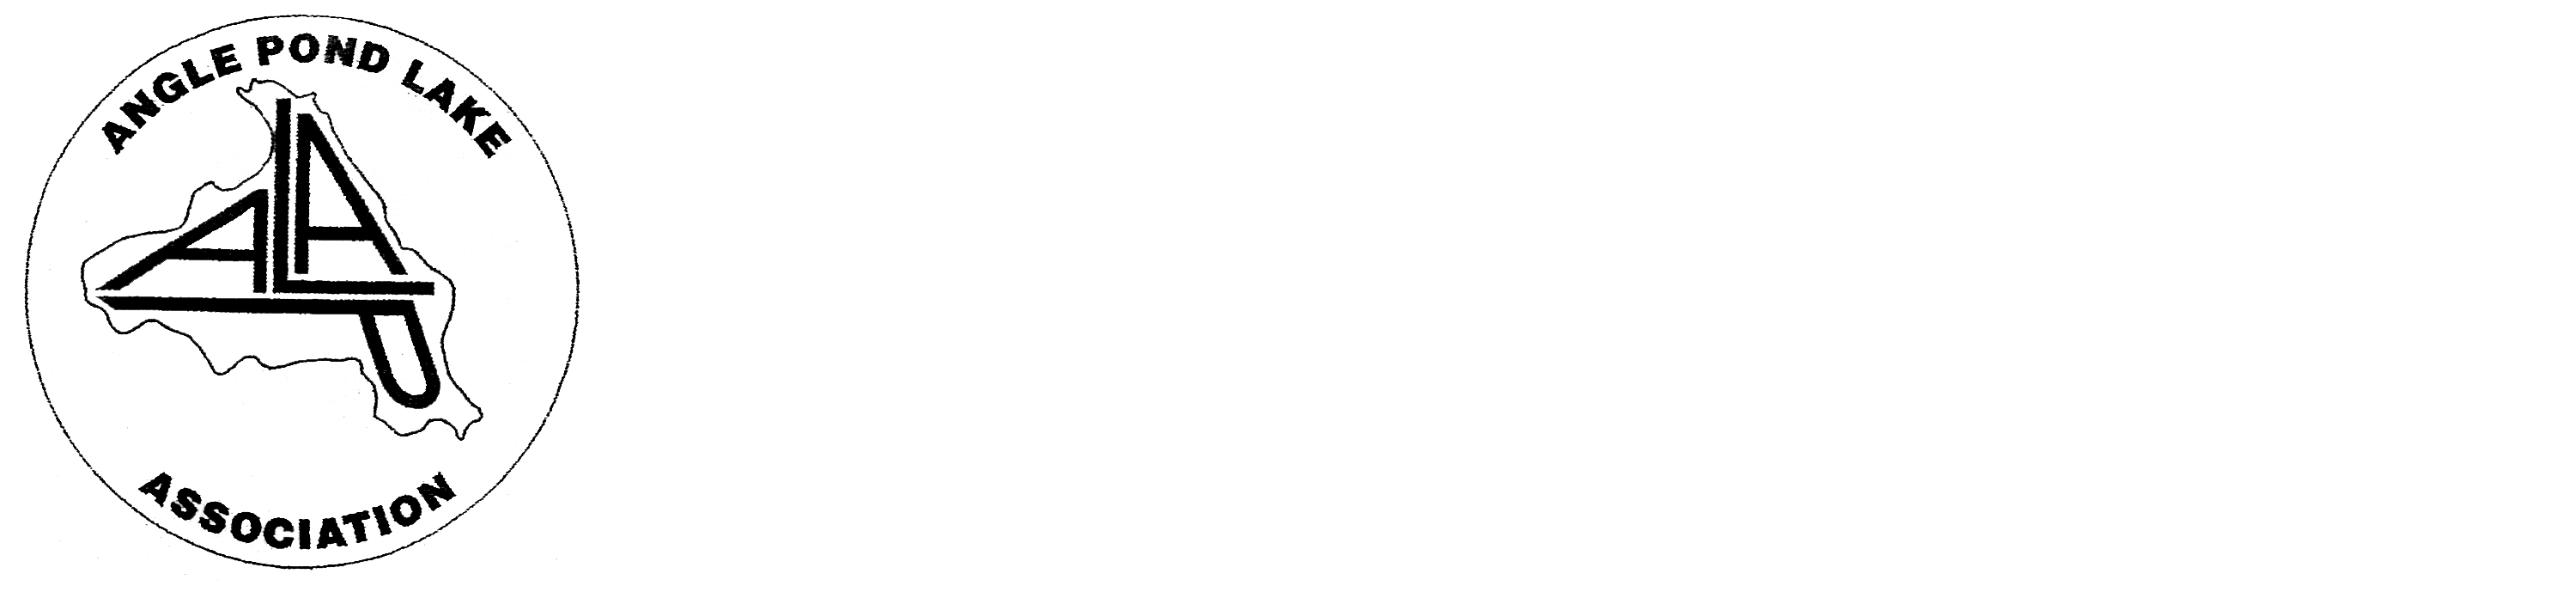 Angle Pond Lake Association